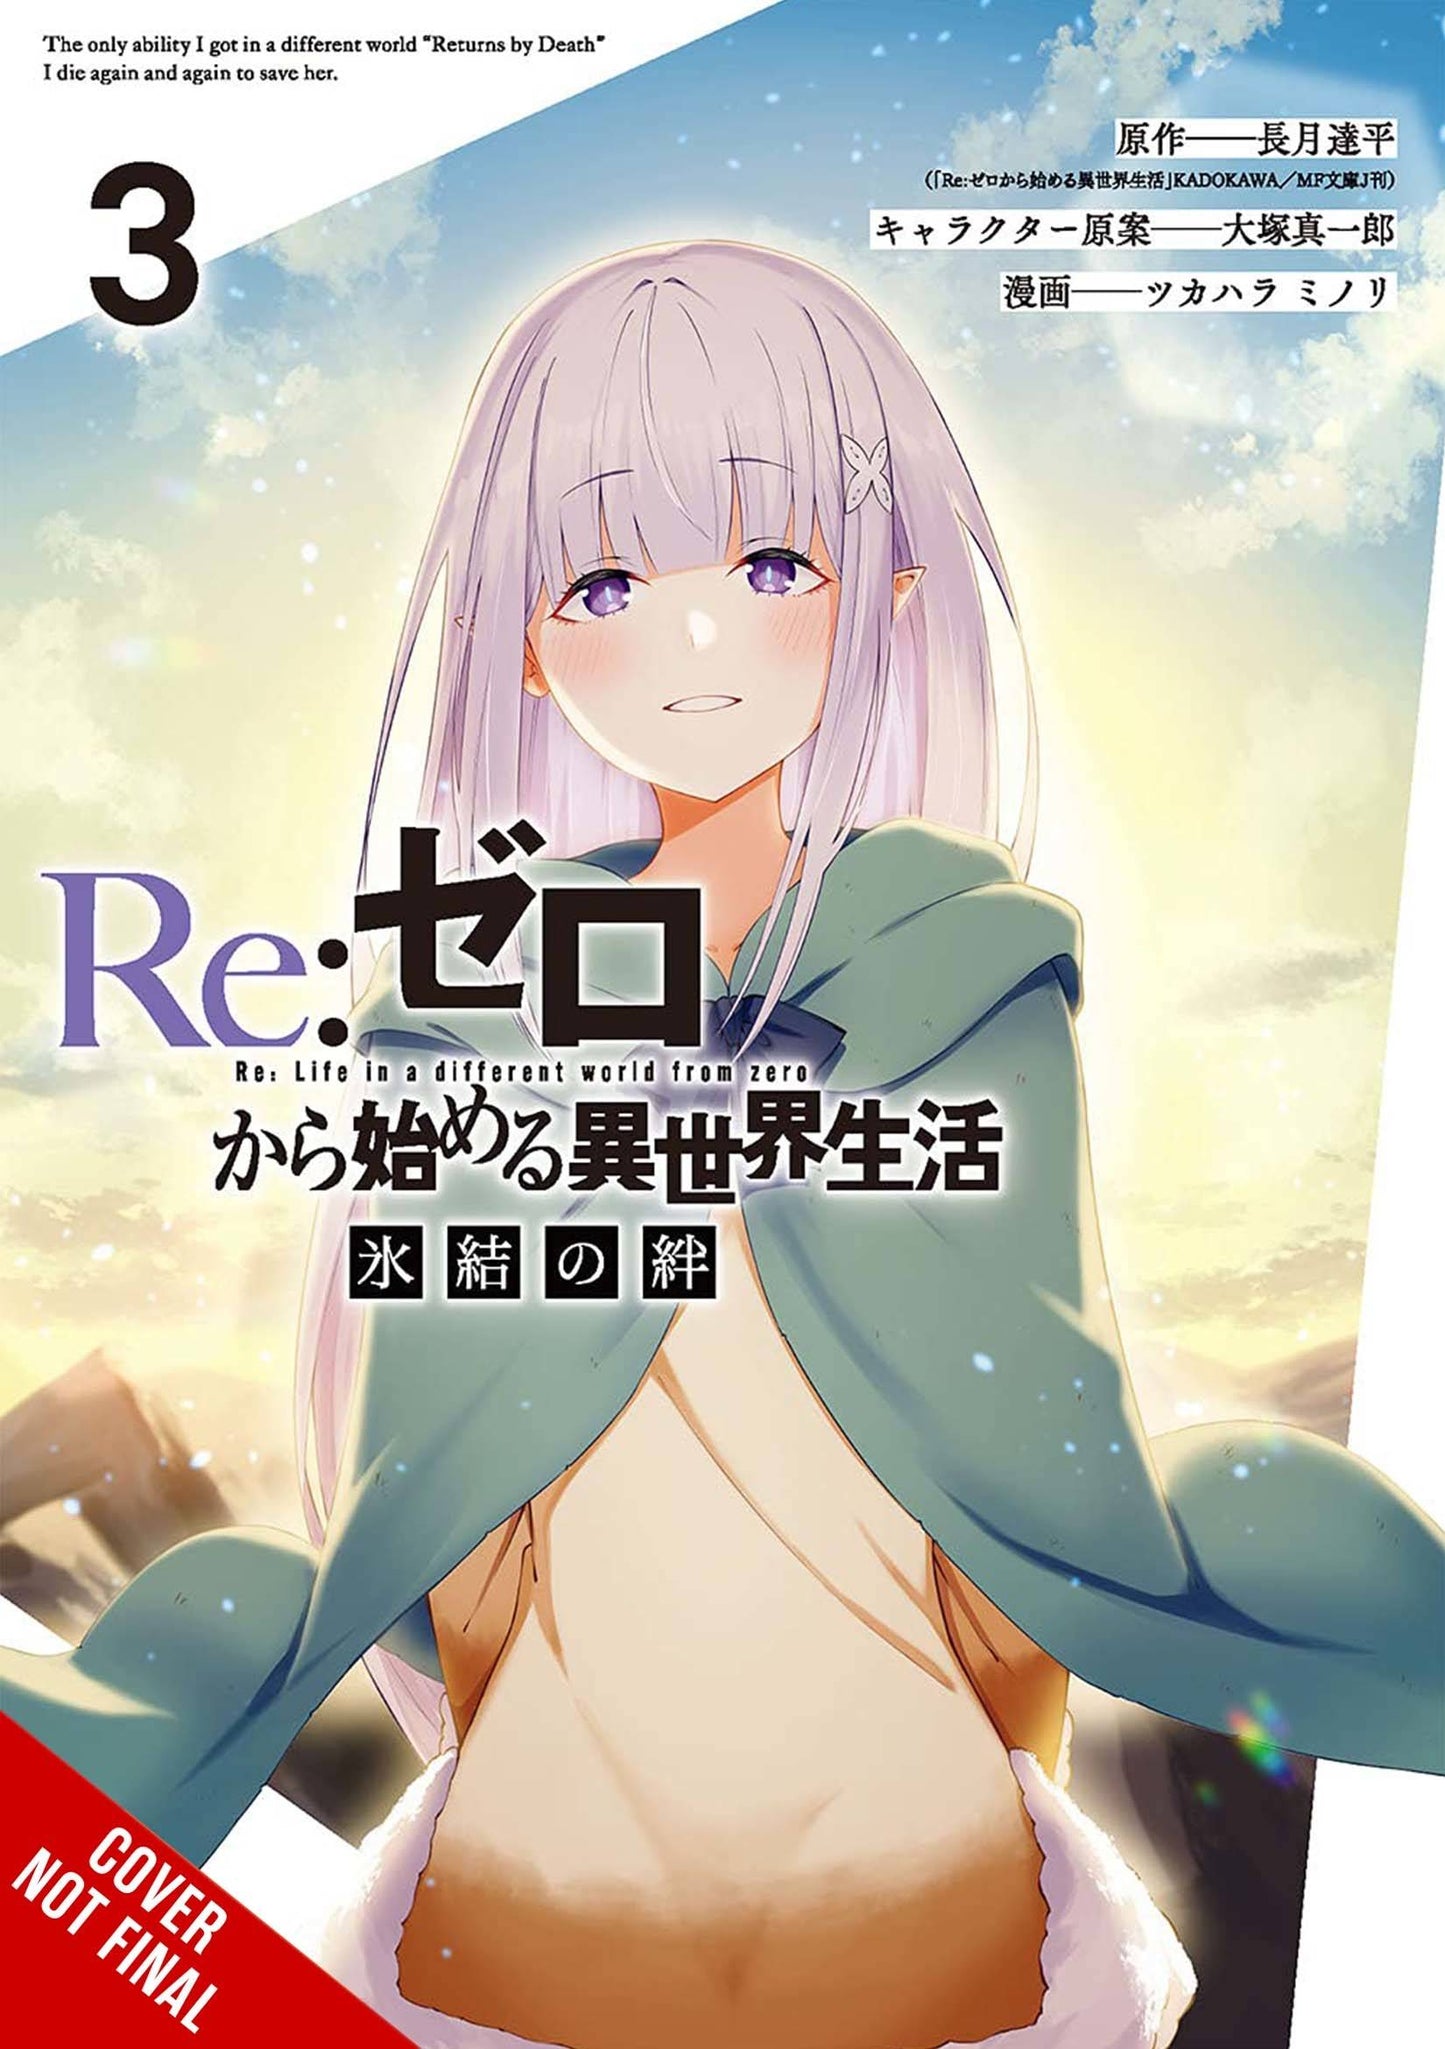 Rezero Frozen Bond Gn Vol 03 (Mr) (C: 0-1-2) (3/22/2023)